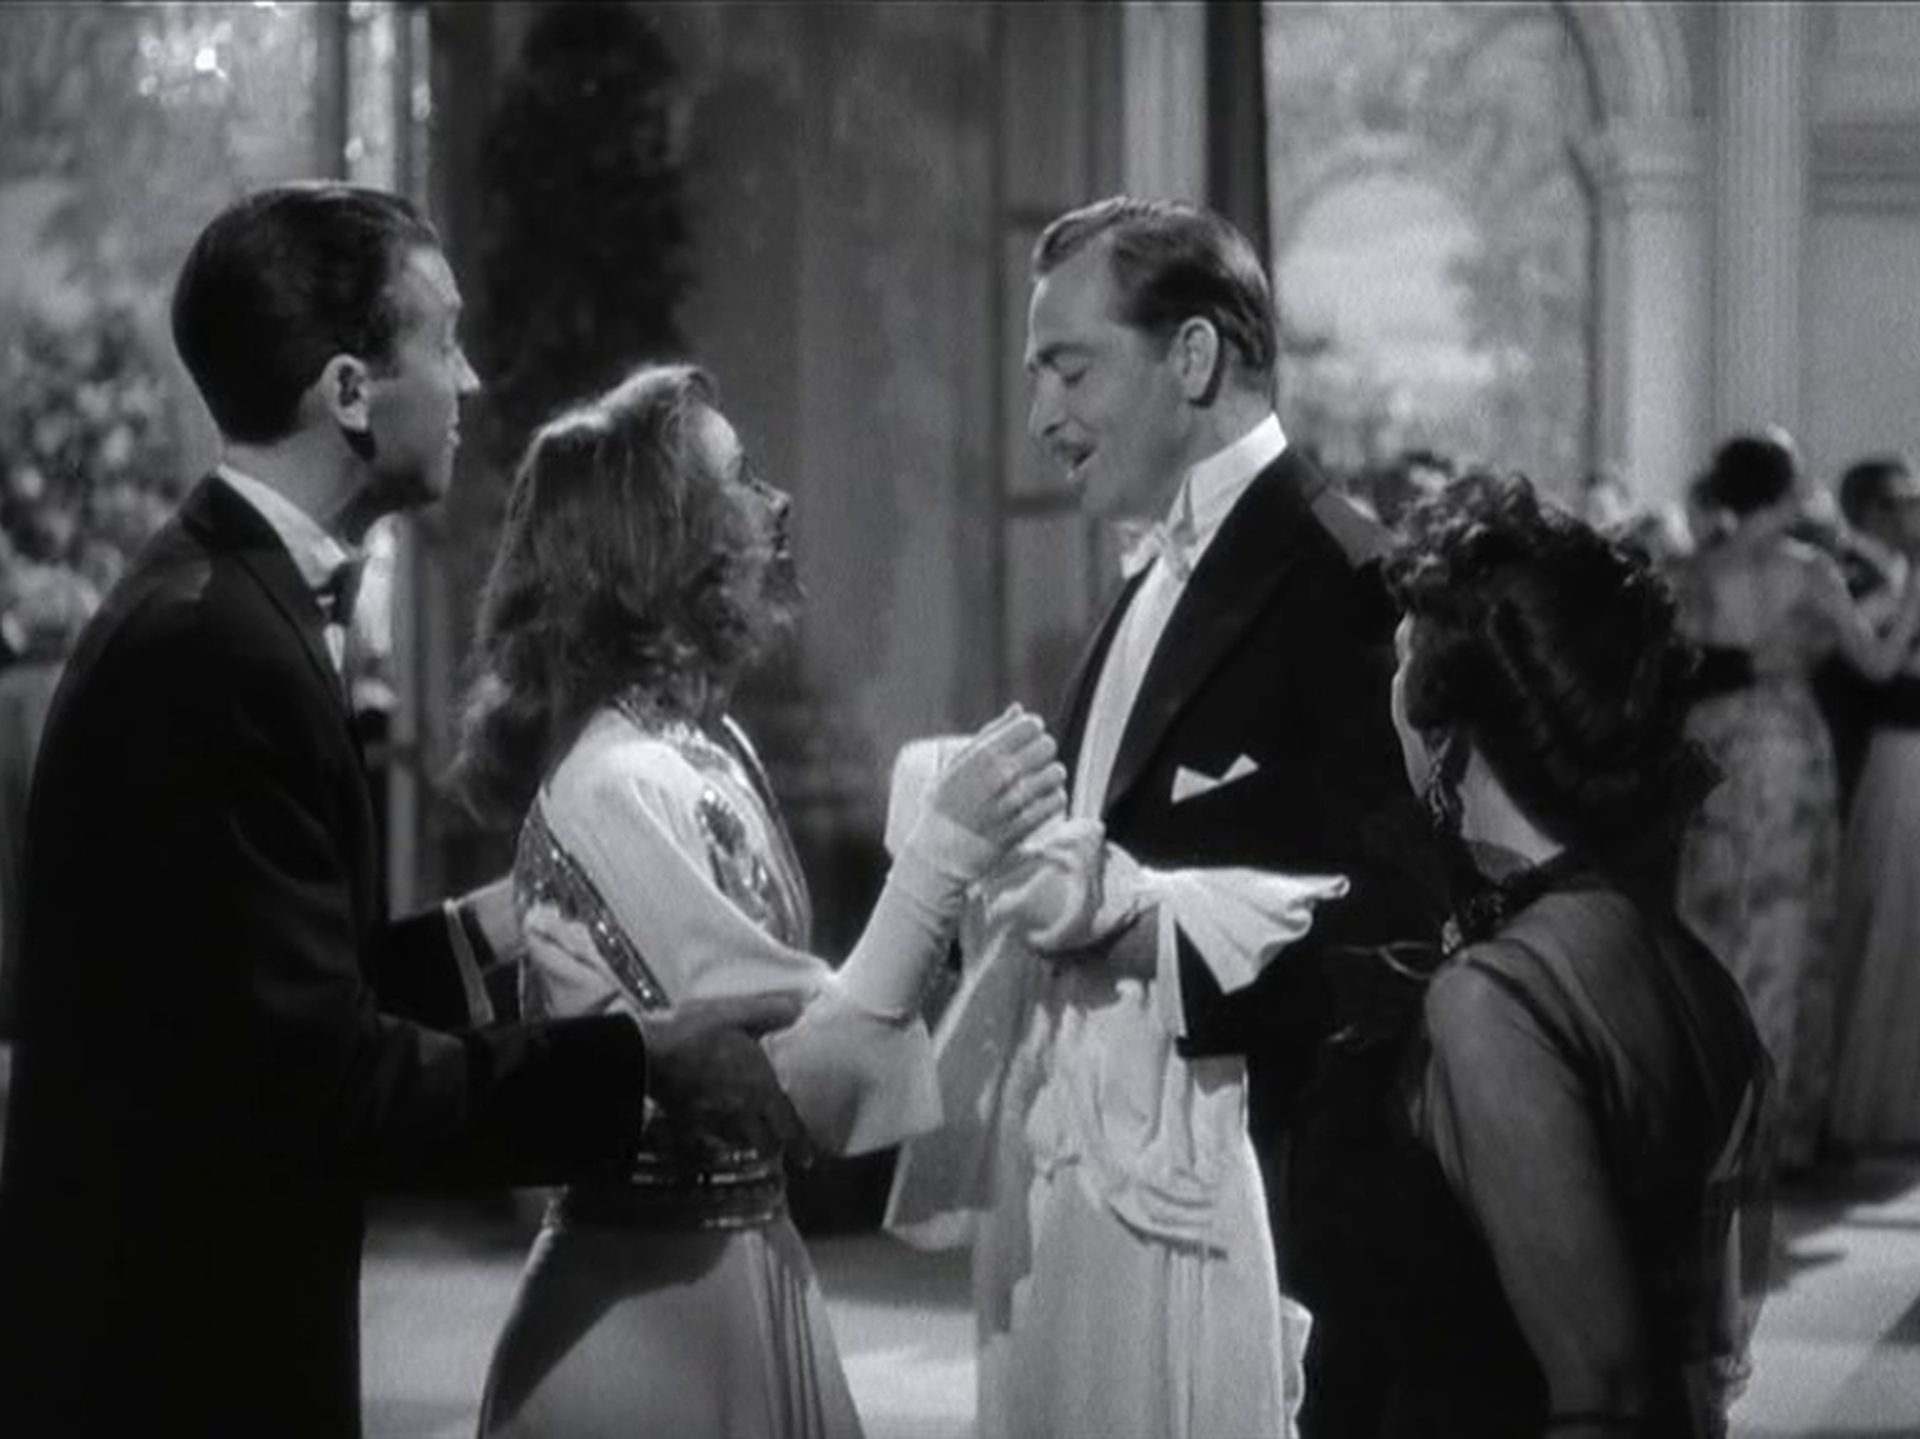 John Howard als George Kittredge im Beisein seiner Verlobten Tracy und dem Reporter Connor in einer Halle mit großbürgerlichem Flair.